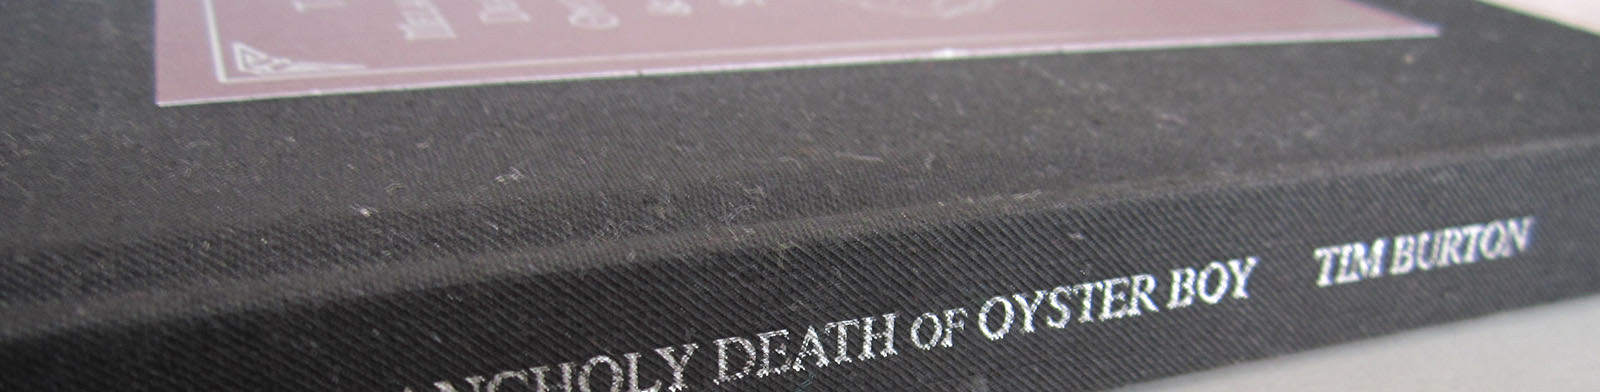 Recensione libro “Morte malinconia del bambino ostrica”: l’hai mai letto? Pareri ed opinioni di Christian DeLord